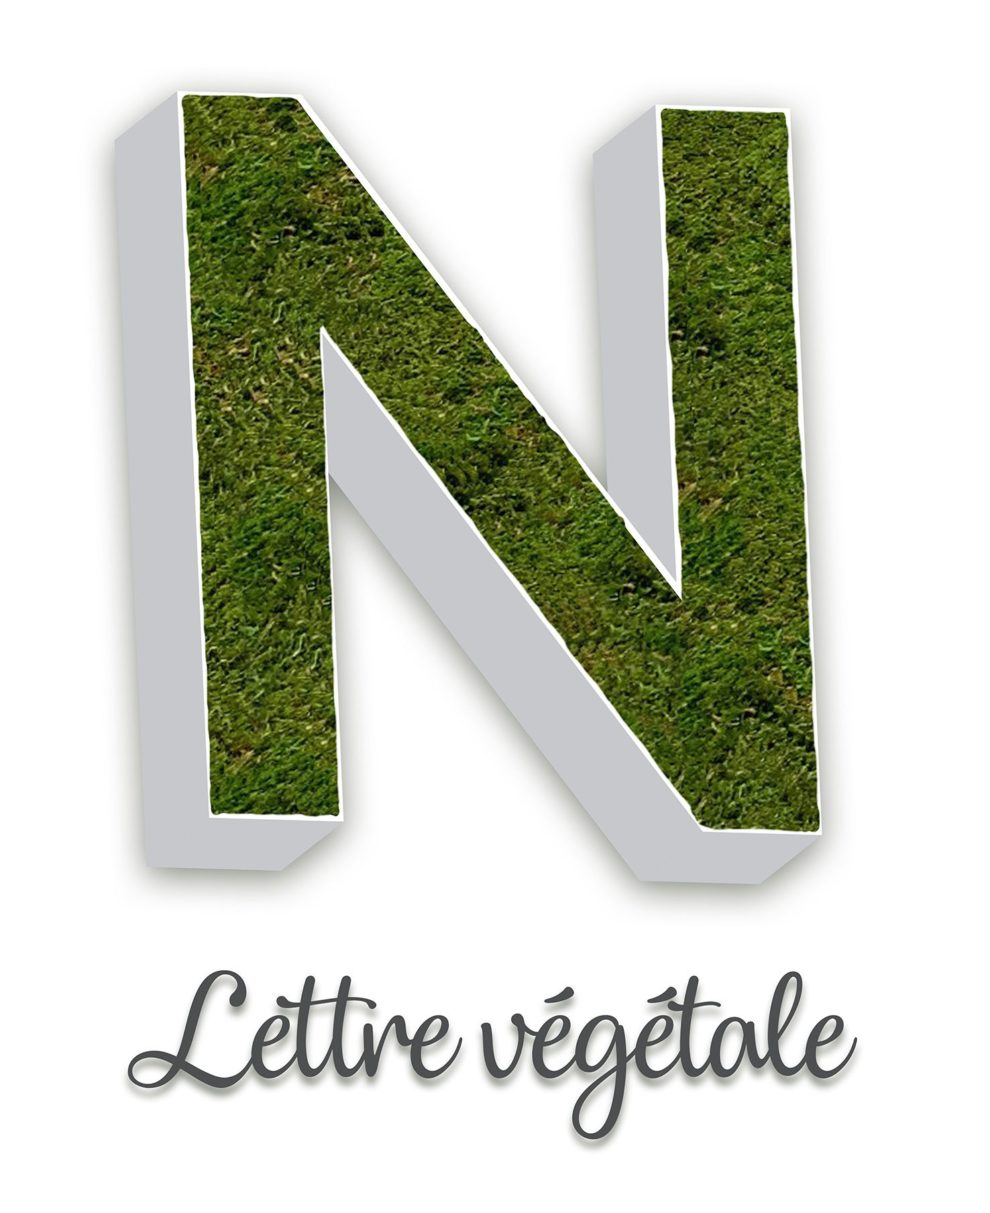 Lettre Vegetale Enseigne Identilux 990x1213